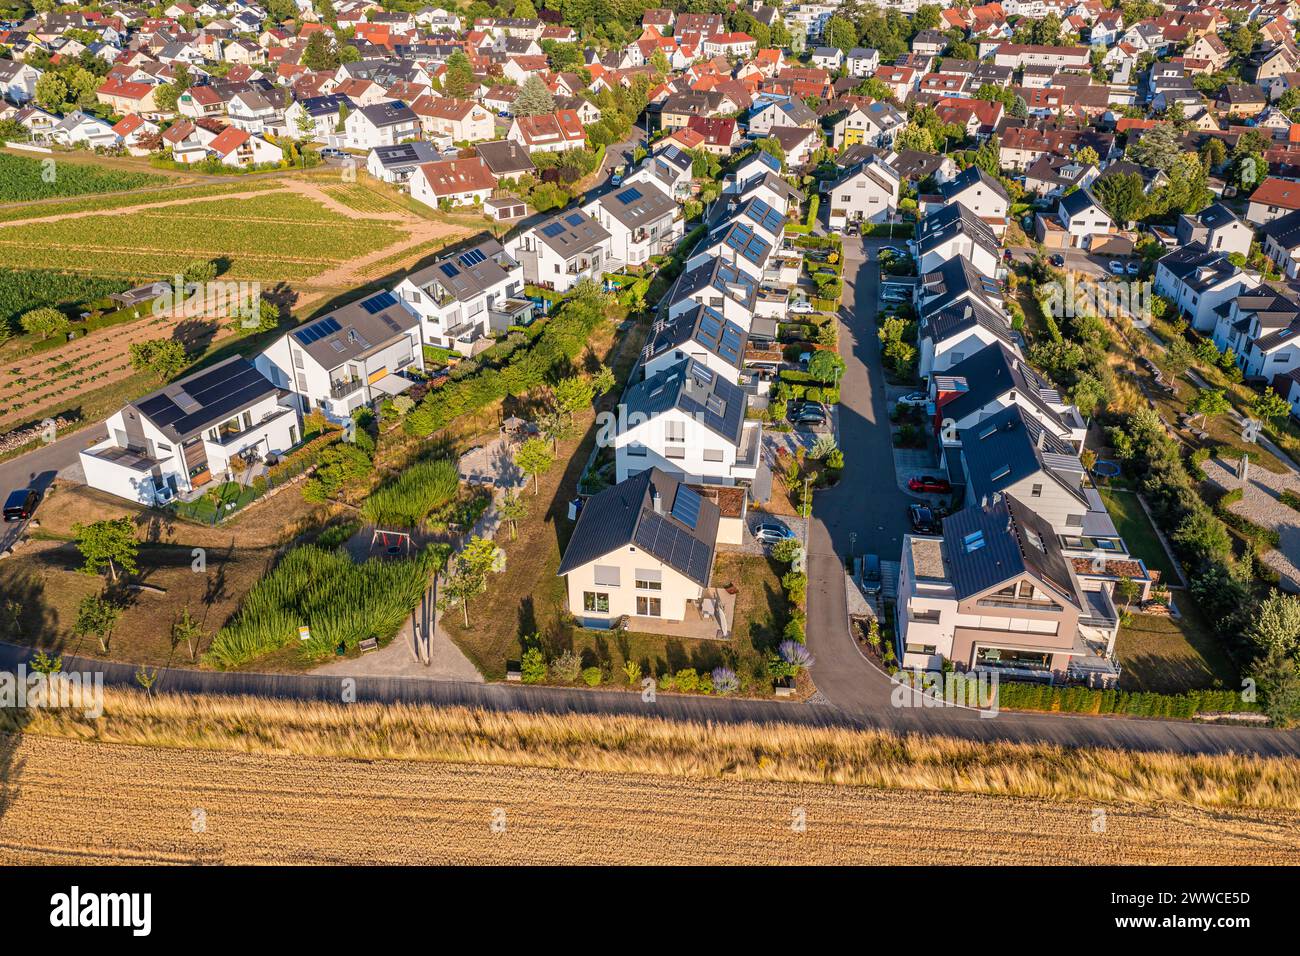 Alemania, Baden-Wurttemberg, Waiblingen, Vista aérea de la nueva zona de desarrollo con casas modernas de eficiencia energética Foto de stock